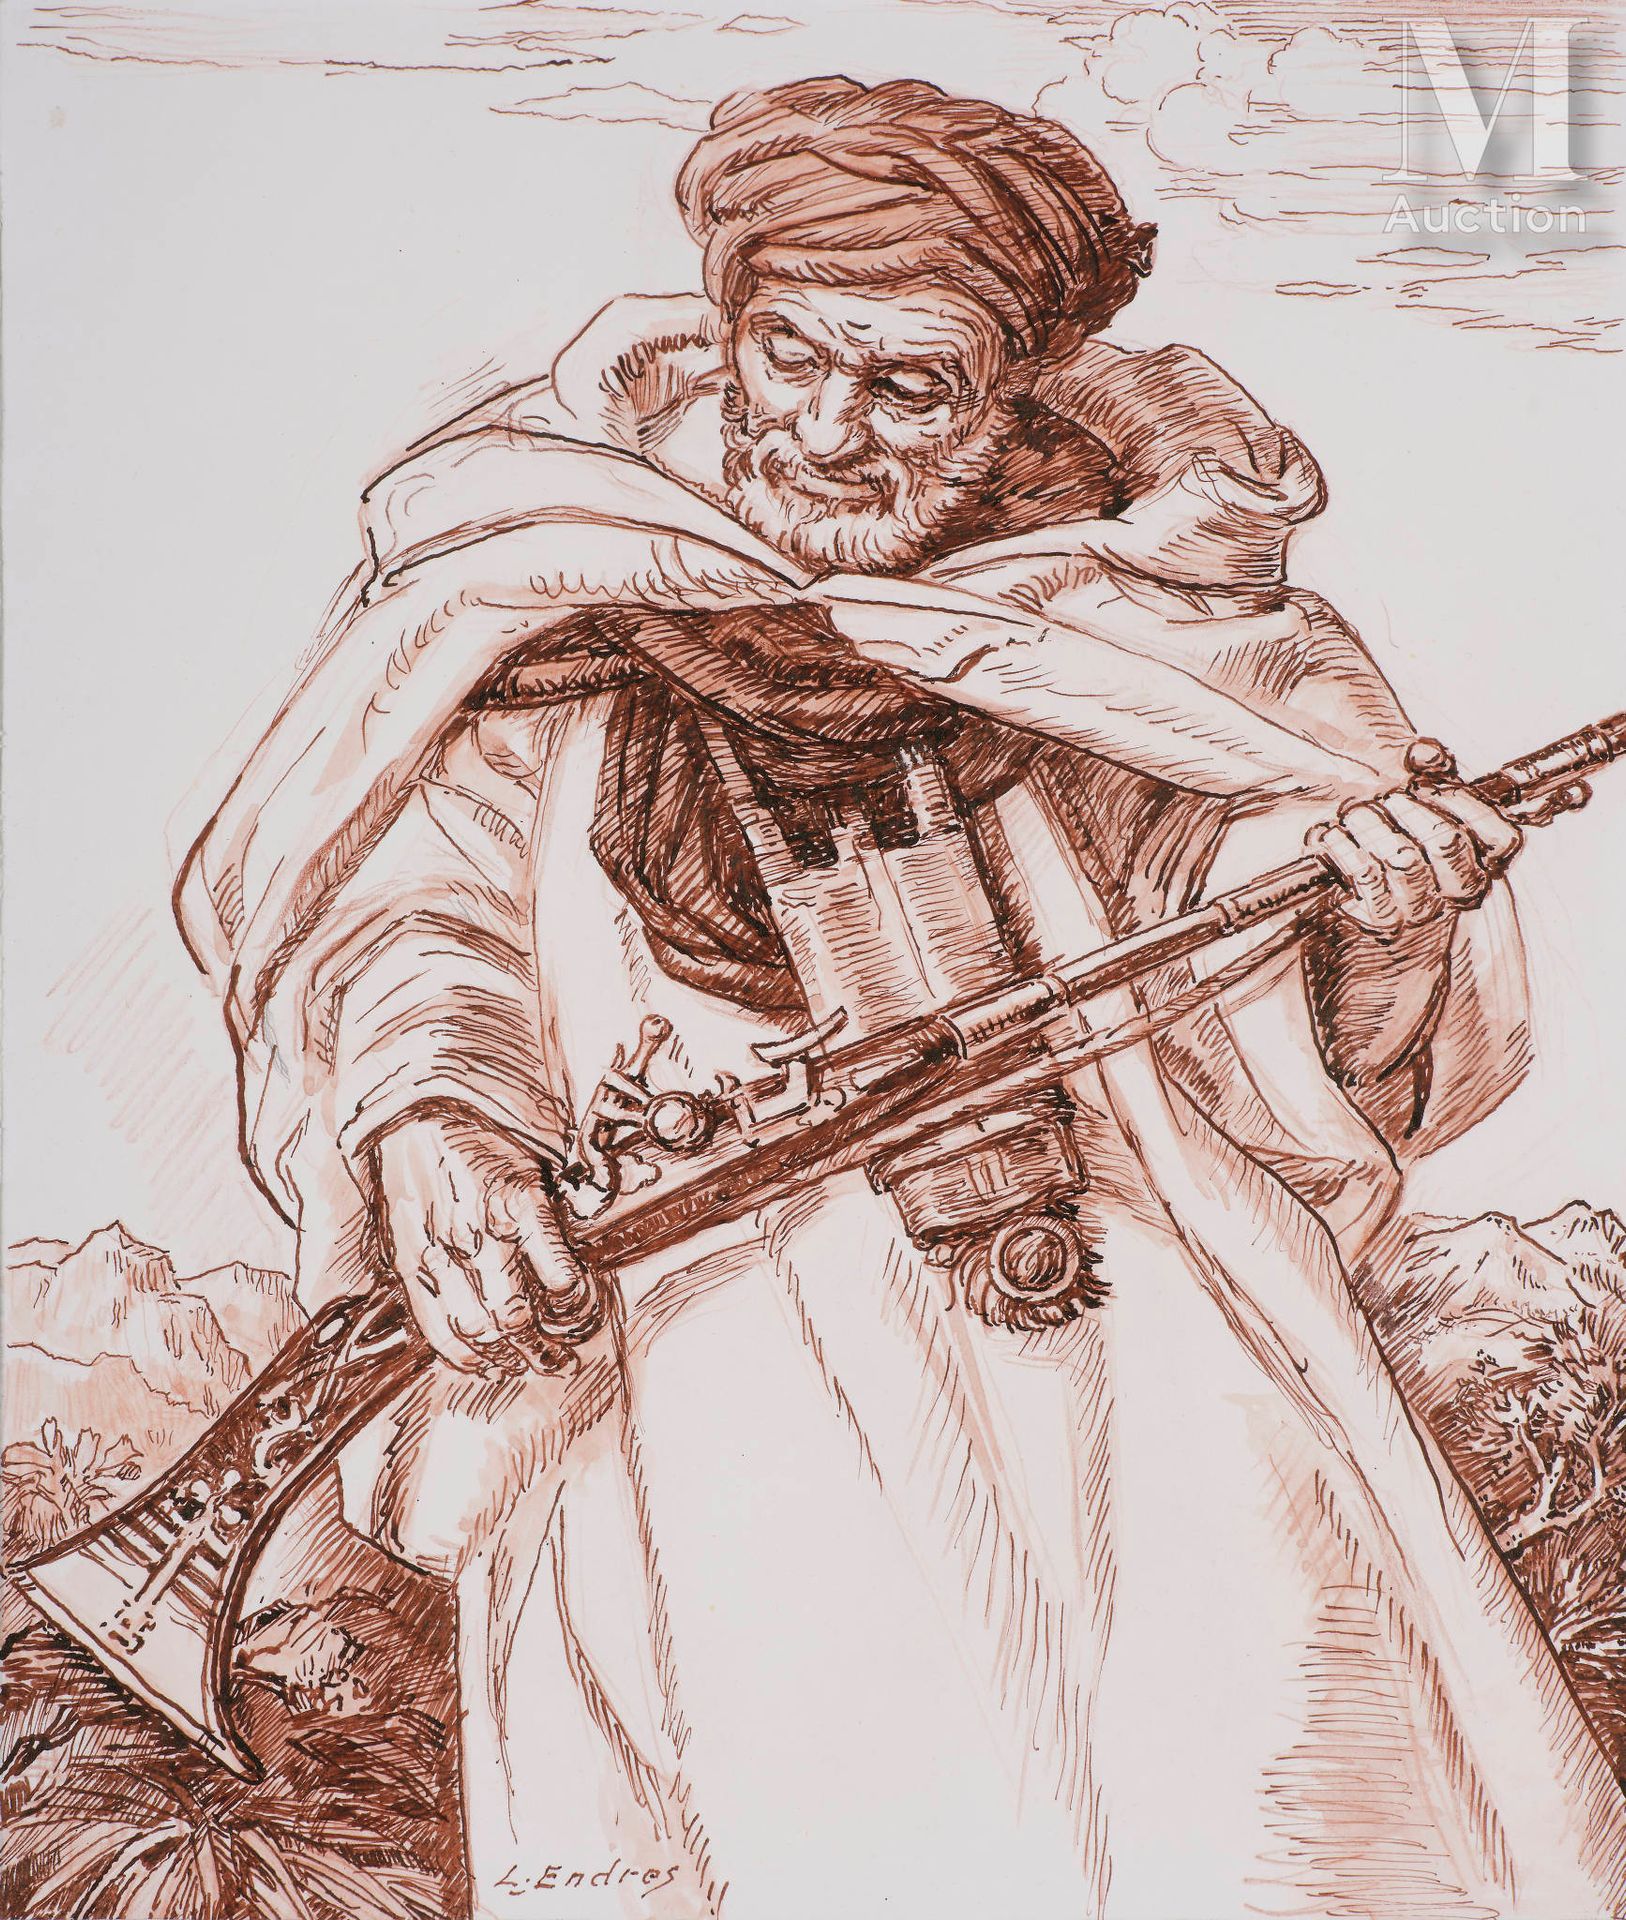 Louis ENDRES (1896 - 1986) 摩洛哥猎人

纸上印度墨水和铅笔线

28,5 x 22,5 cm

左下角签有L.恩德雷斯